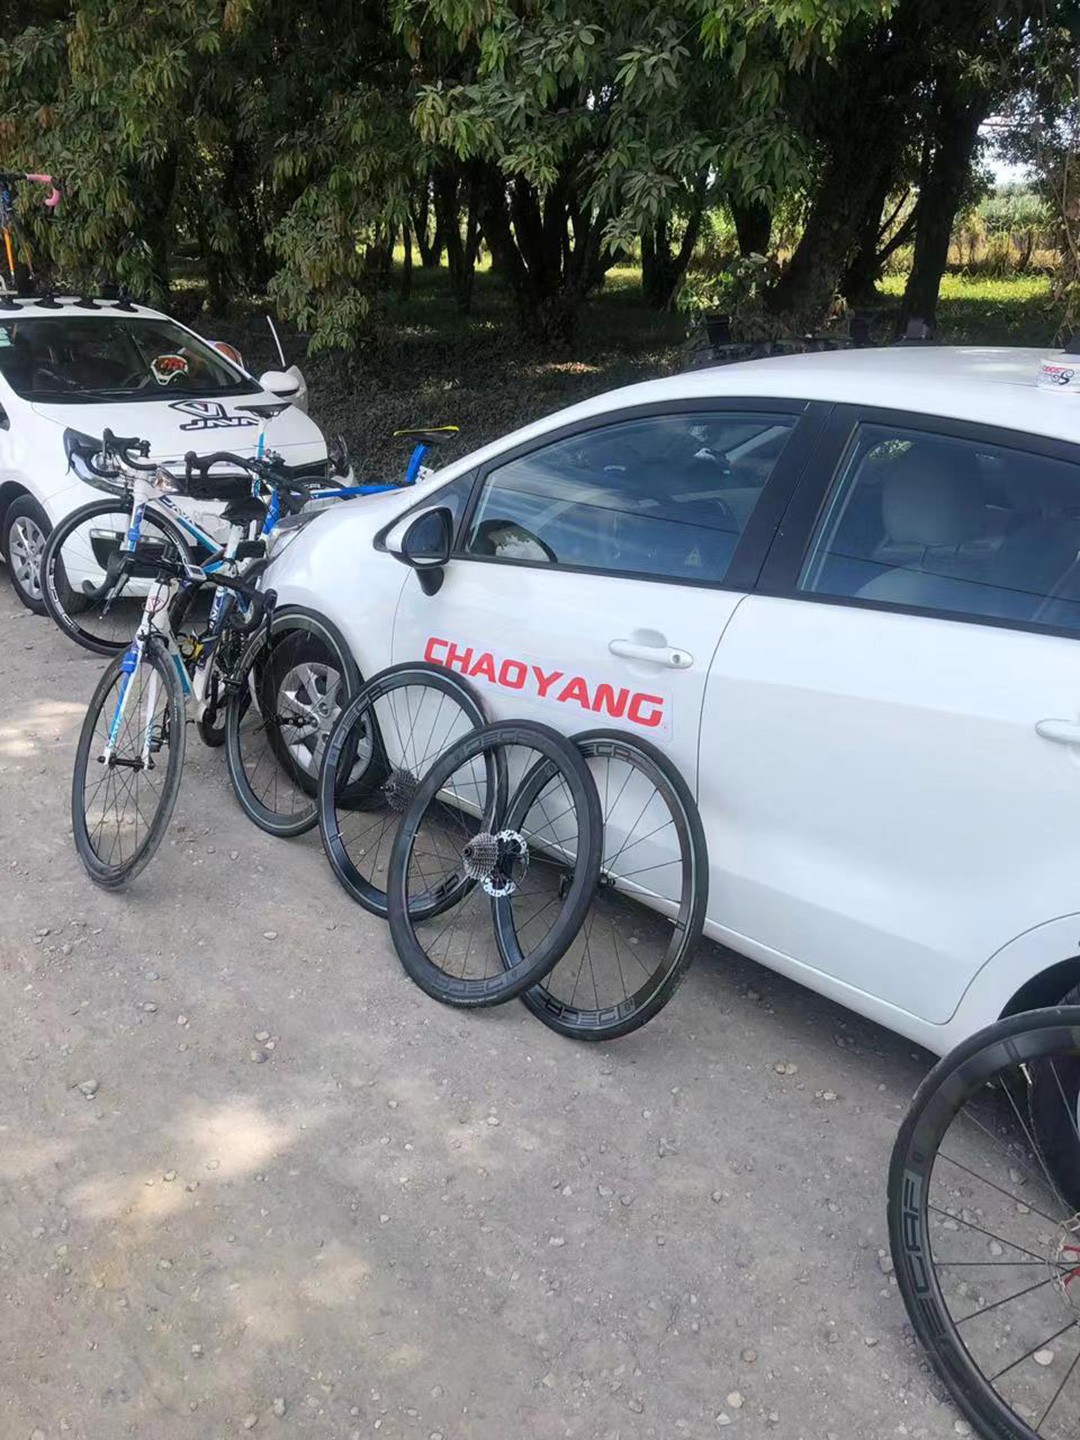 2019 Java cycling team-CHAOYANG